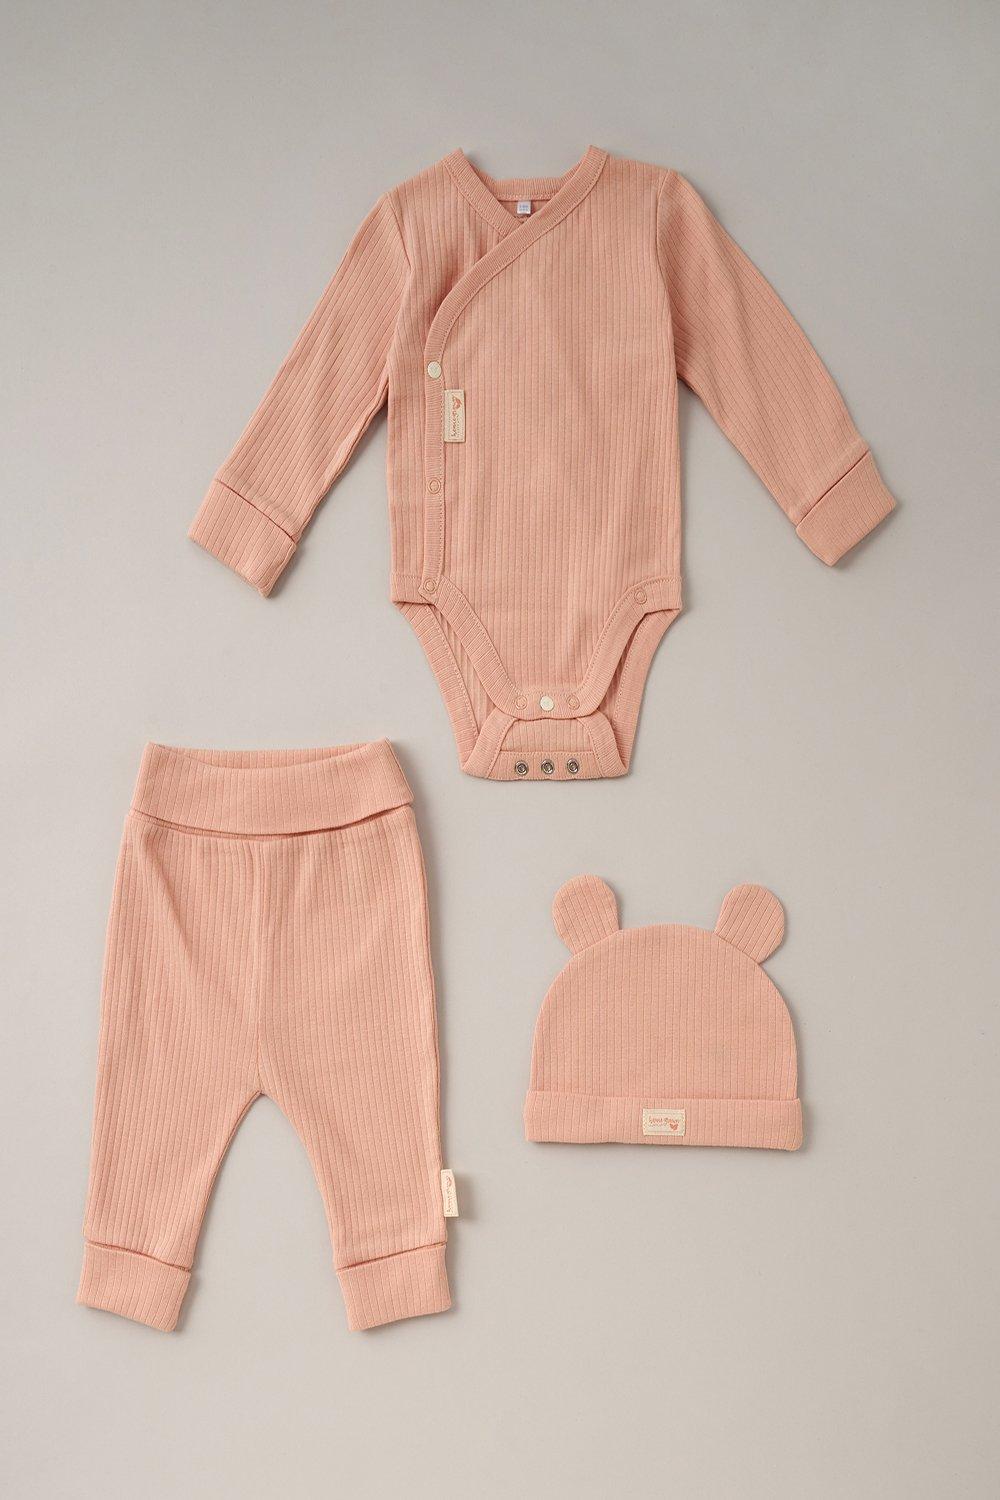 Хлопковое боди, брюки для бега и шляпа, комплект из 3 предметов Homegrown, розовый